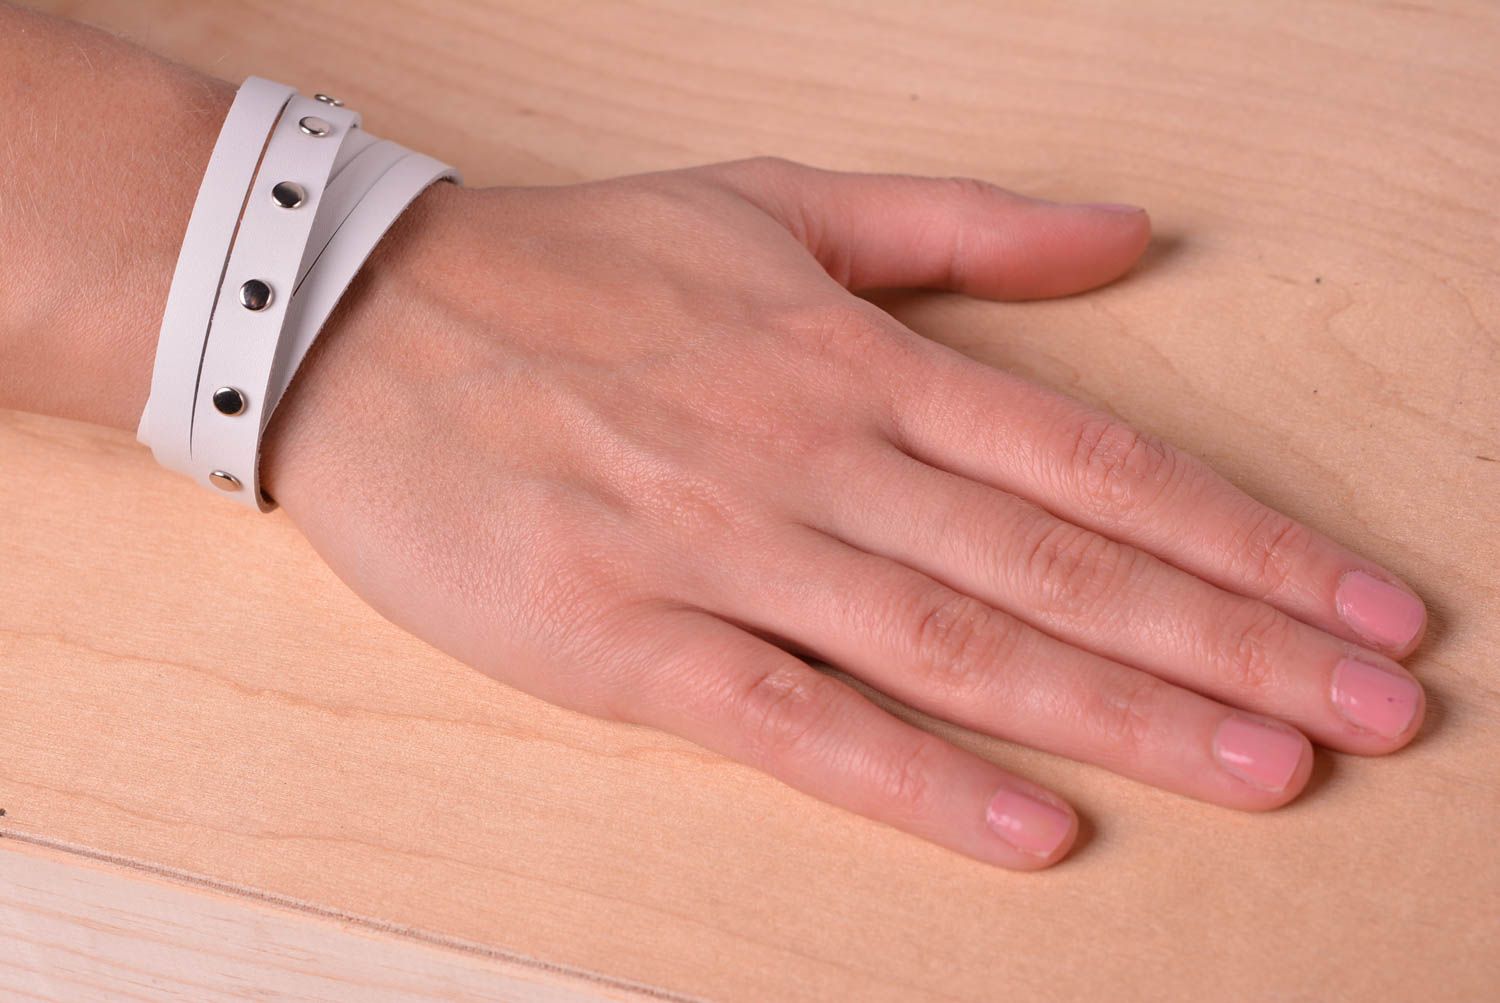 Кожаный браслет ручной работы стильное украшение из кожи браслет на руку фото 2